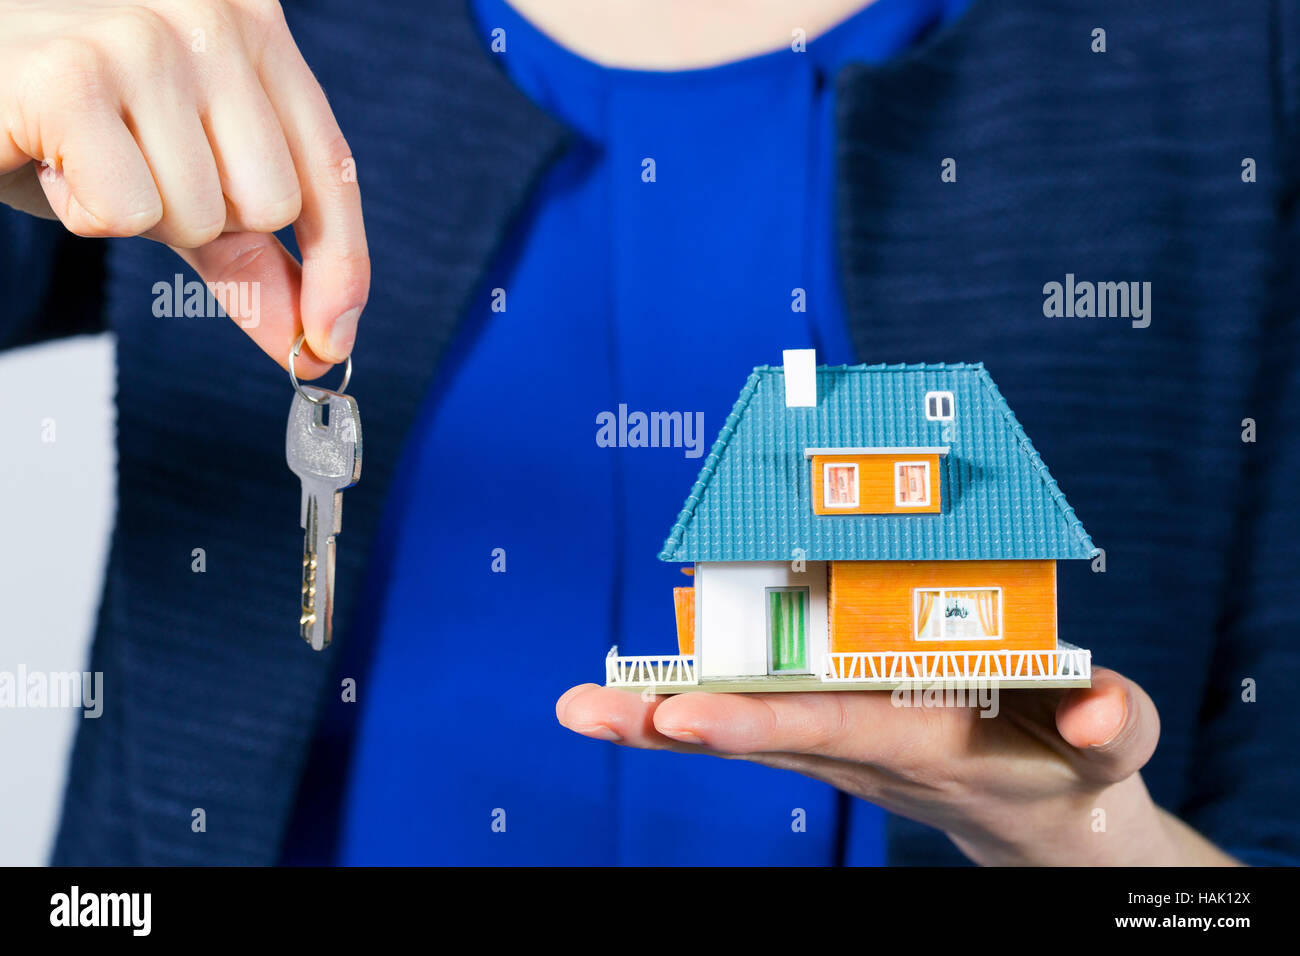 Real Estate Agent con la llave y la casa modelo en la mano Foto de stock